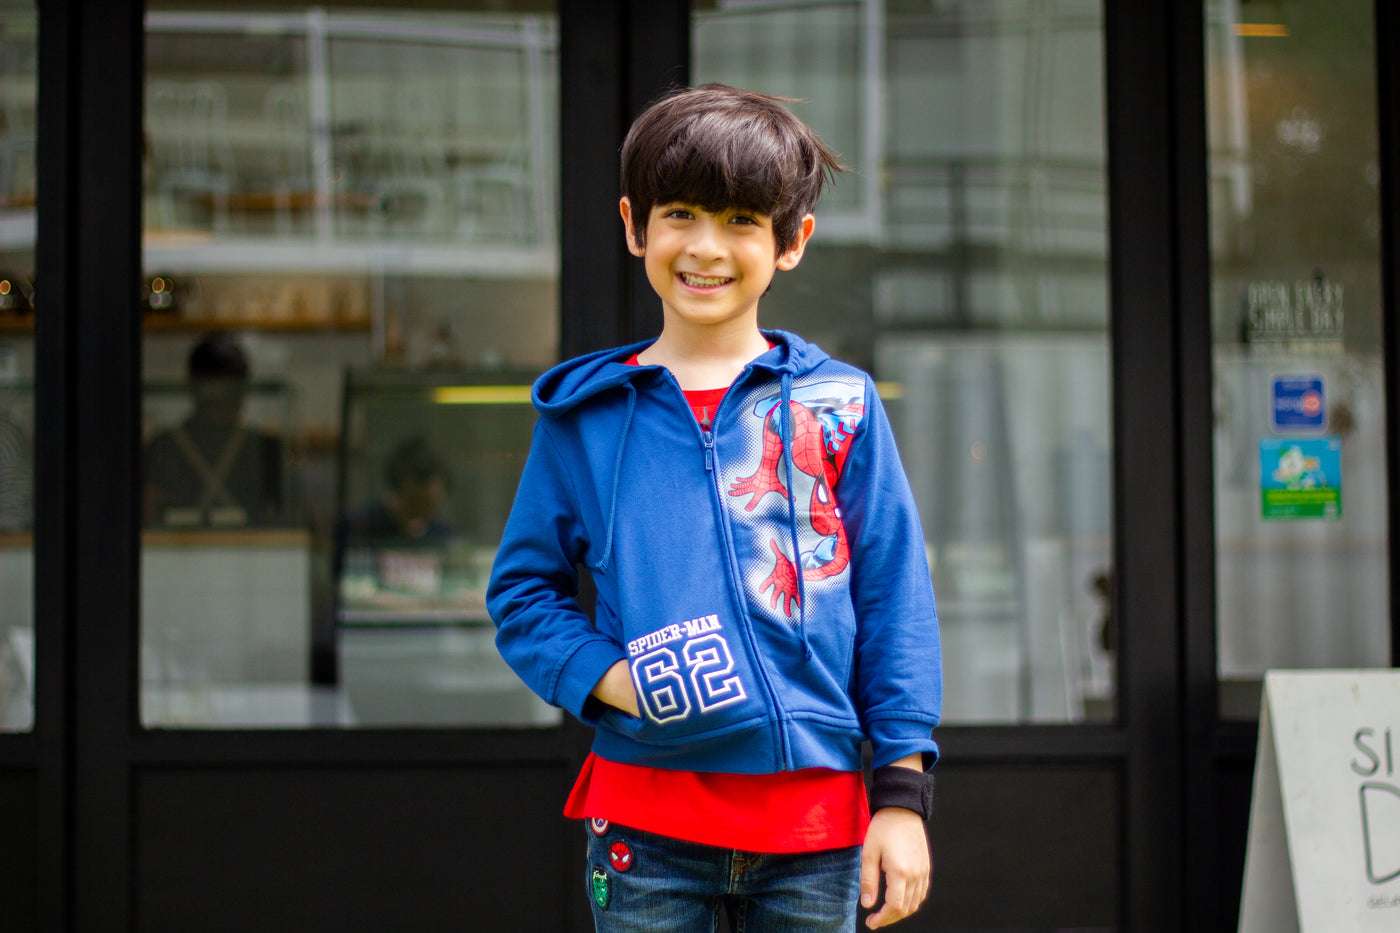 Marvel Boy Spider-Man Jacket - เสื้อแจ็คเก็ตเด็กมาร์เวลลายสไปเดอร์แมน